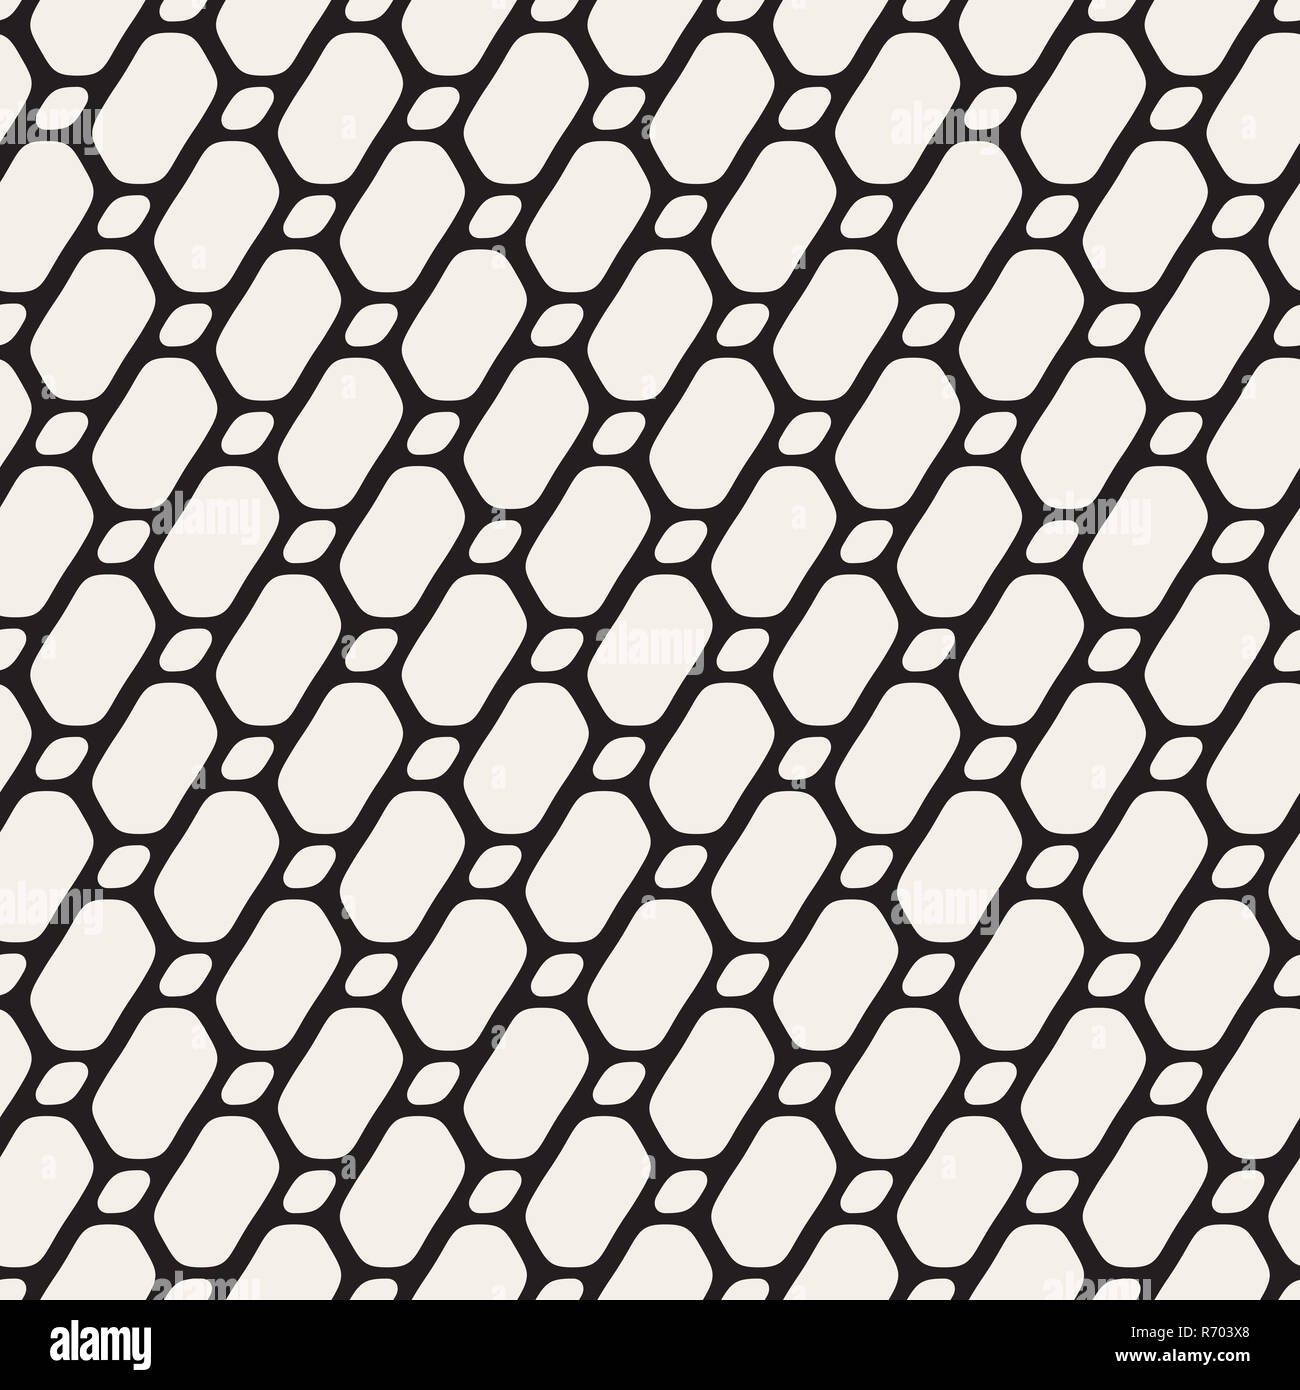 Vektor nahtlose schwarz-weiß Diagonale abgerundete Ellipse Form Gittermuster Stockfoto